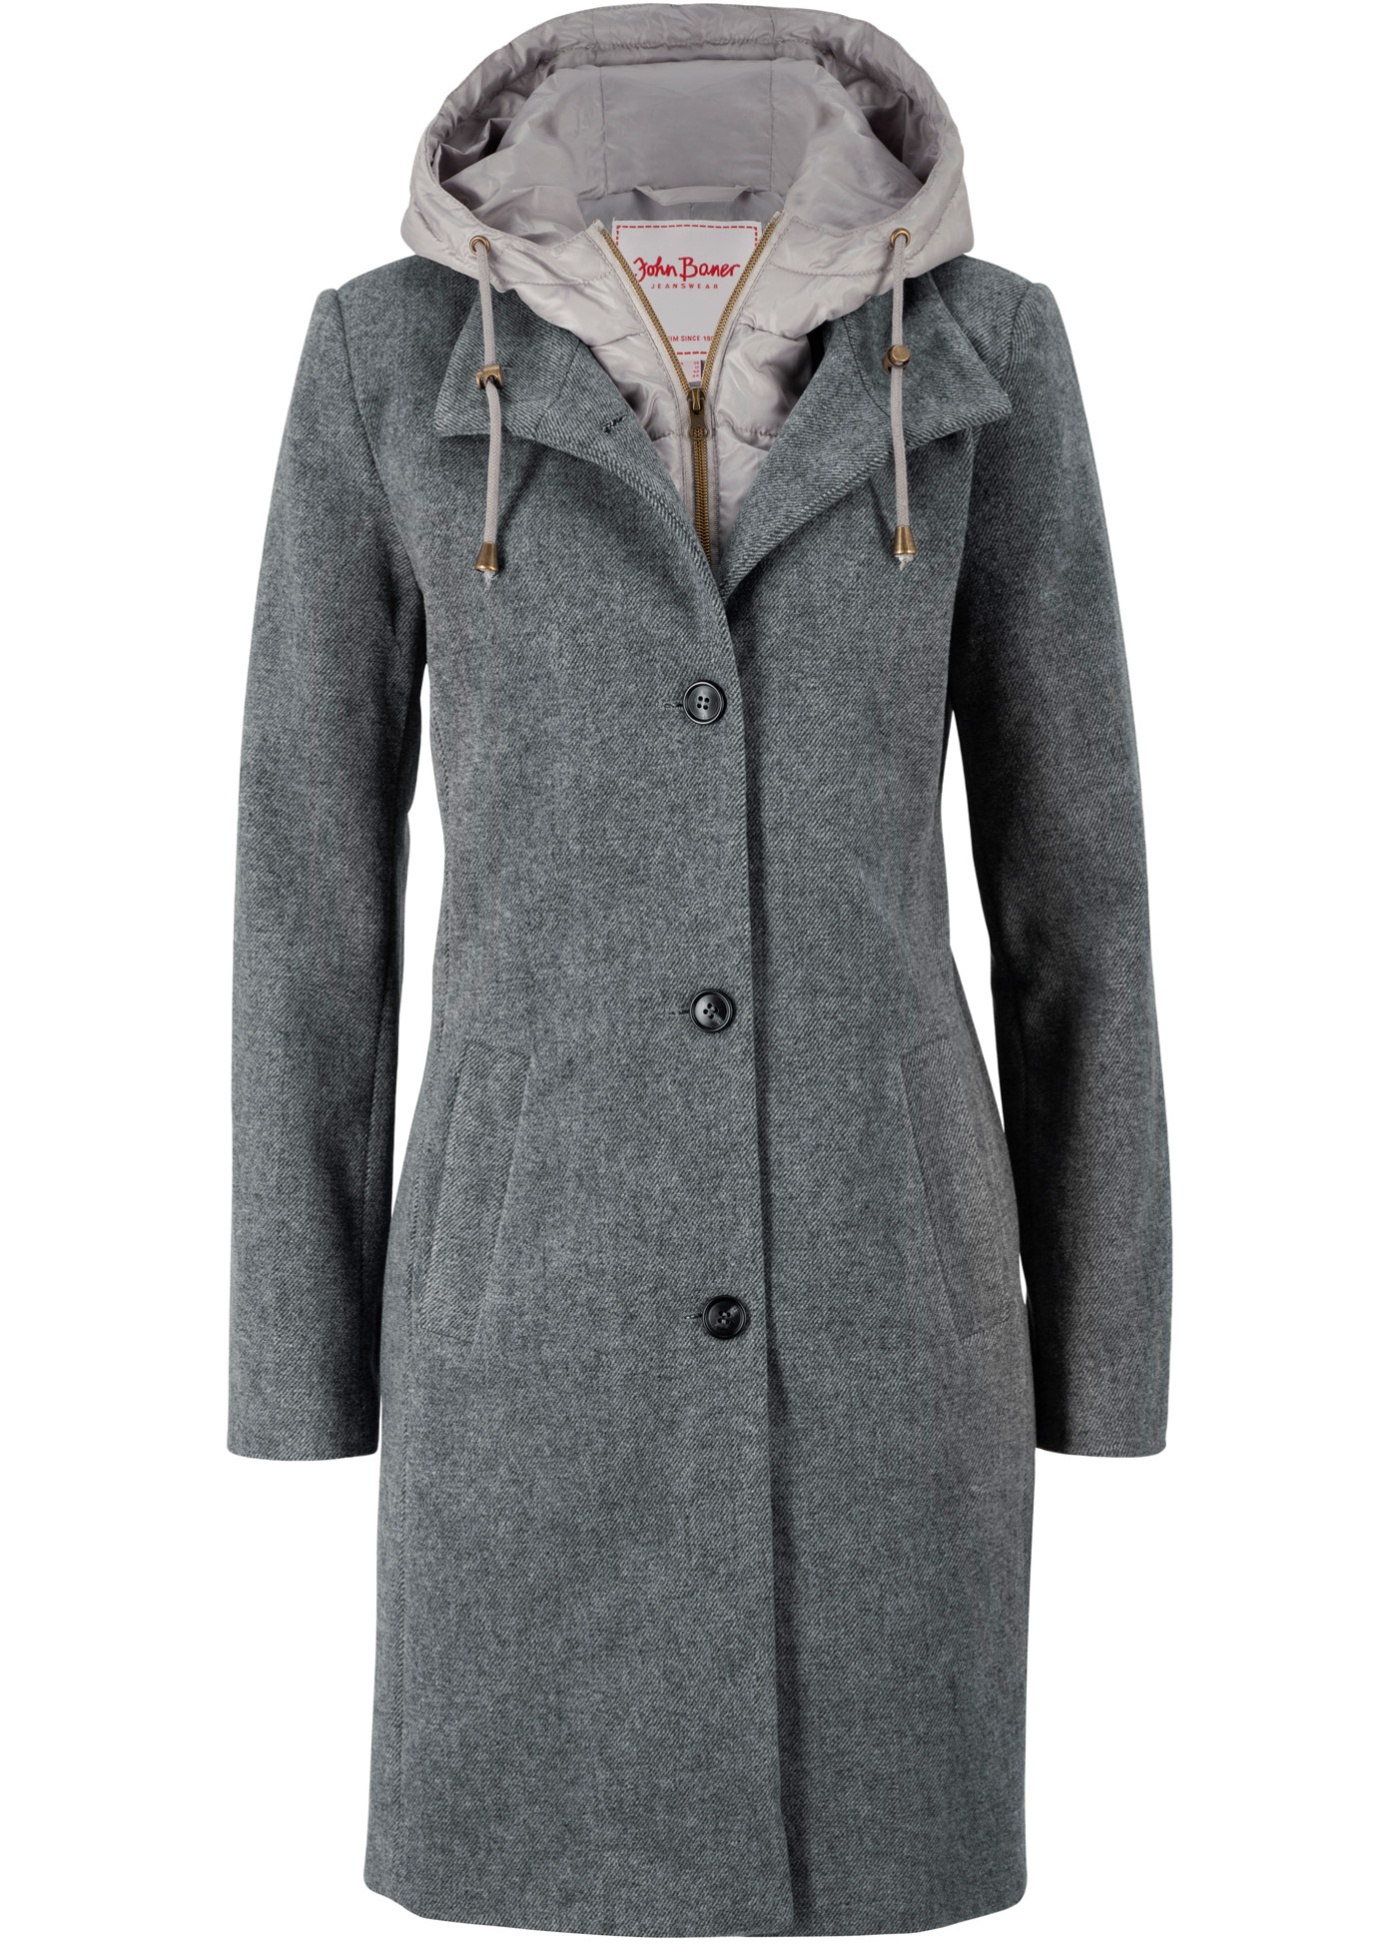 Manteau court d'hiver à teneur en laine, style 2 en 1